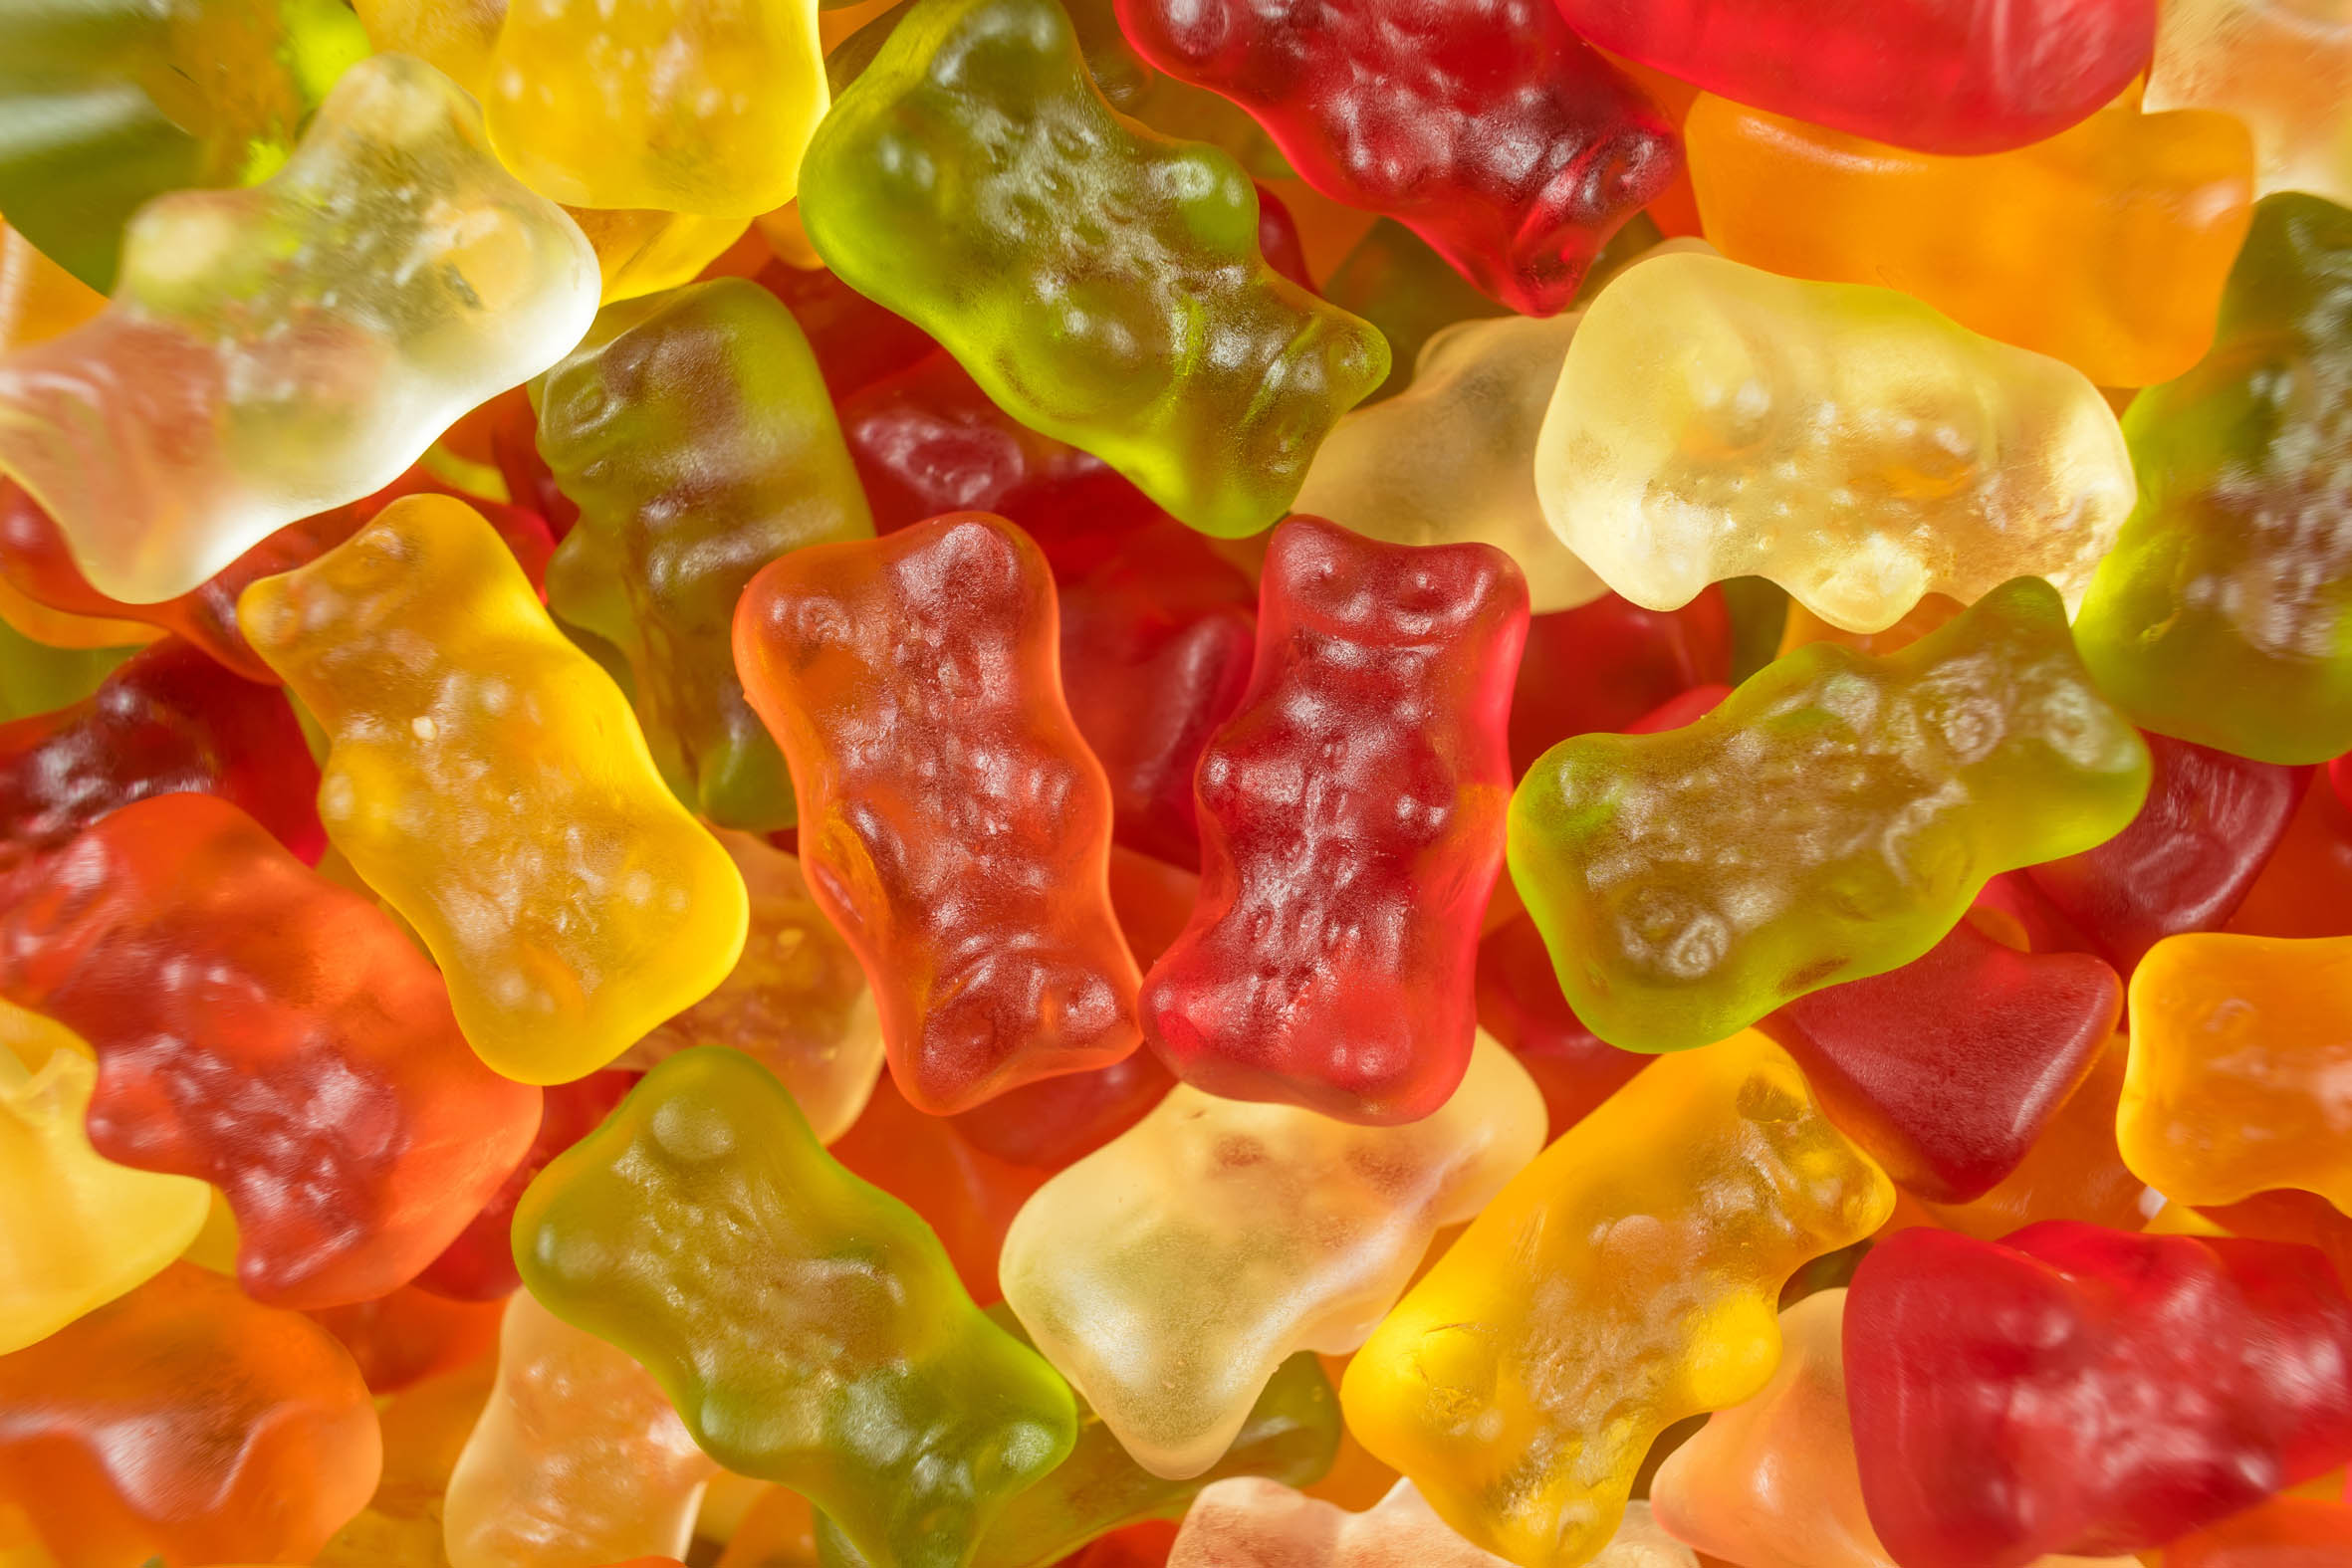 Sweet gummy bears